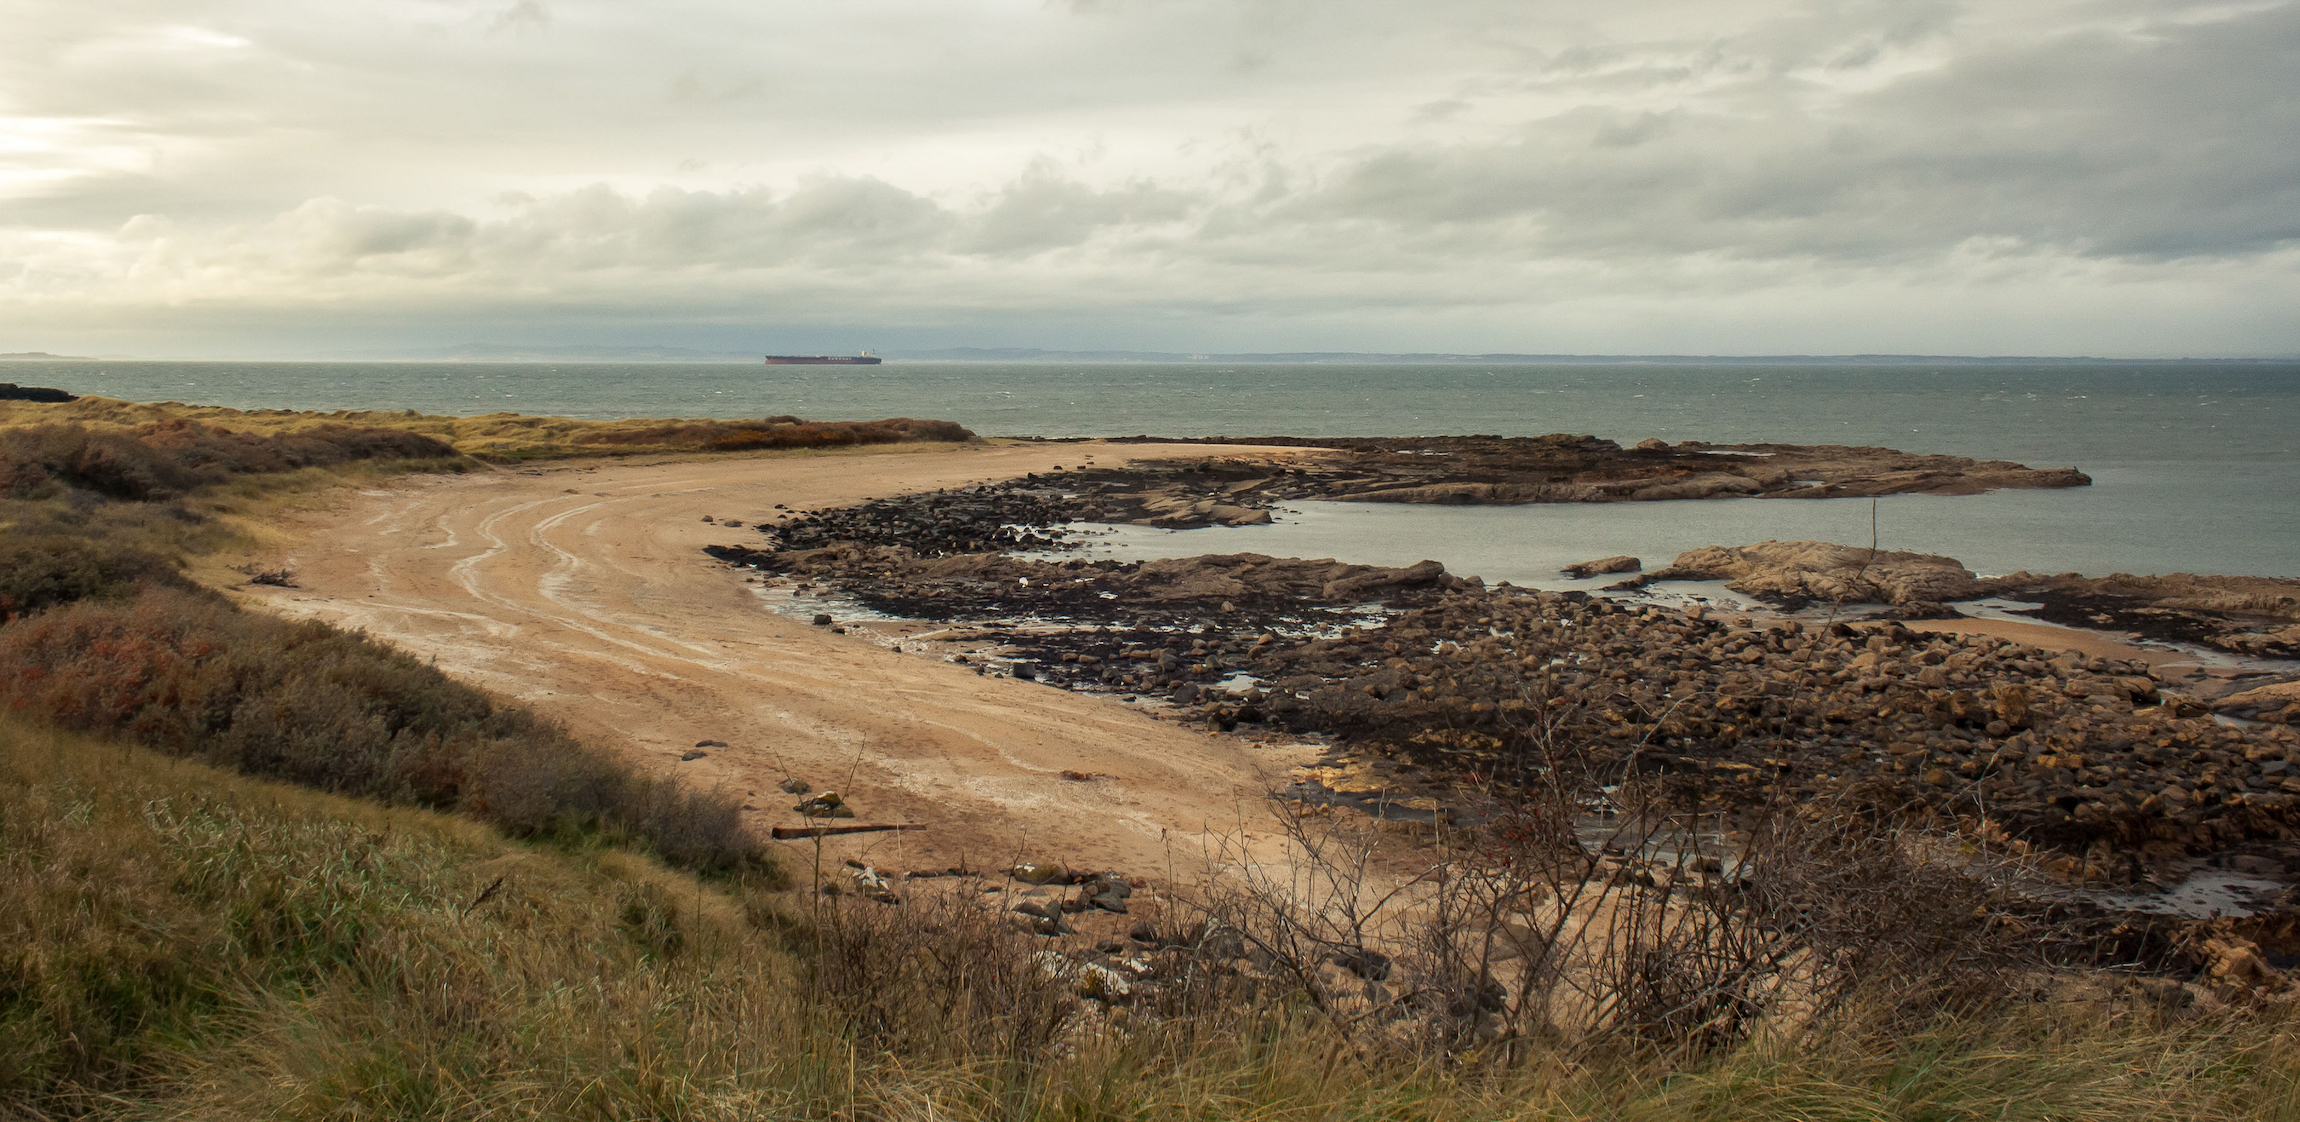 Pejzaż morski w Szkocji, z podkowiastą plażą Gullane utworzoną z piasku i skał. Z trawą i roślinnością na pierwszym planie i dużym statkiem towarowym w tle. Aberlady. Gullane.